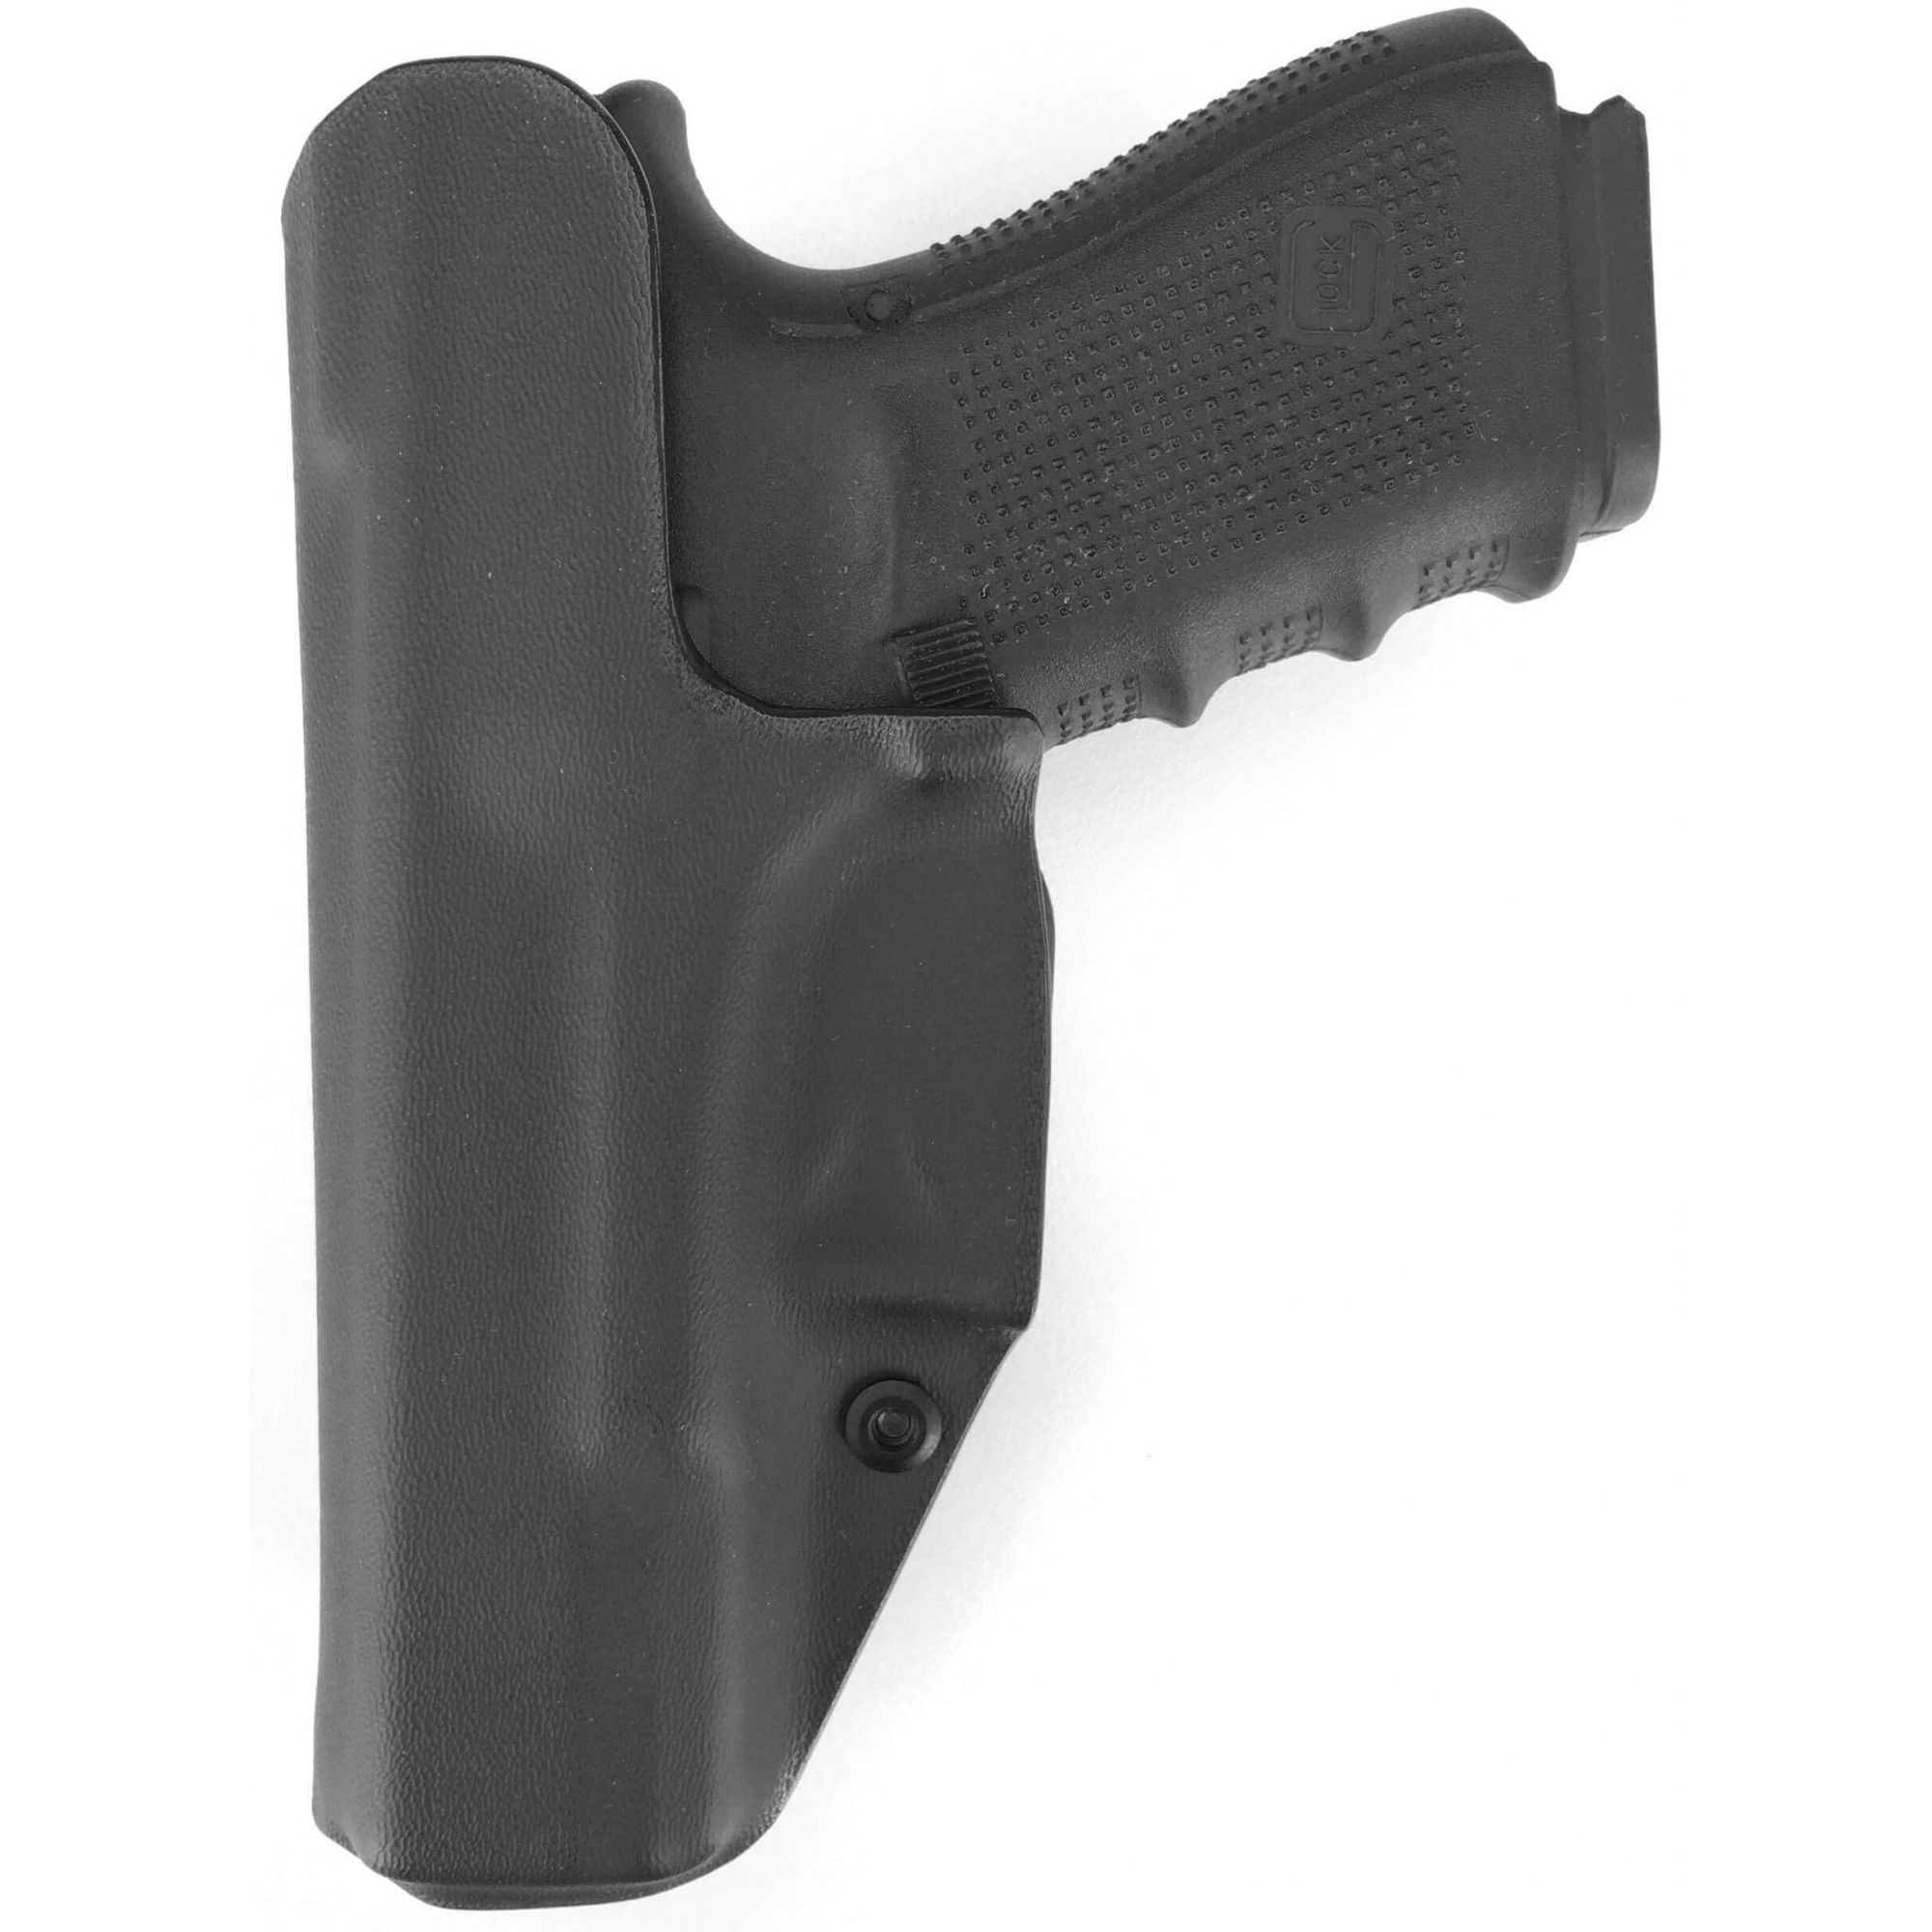 Coldre Kydex Glock [G19] [G19x] [G25] [G23] [G32] [G38] [G45] + 1 Porta-Carregador Universal - Saque Rápido Velado Kydex® 080